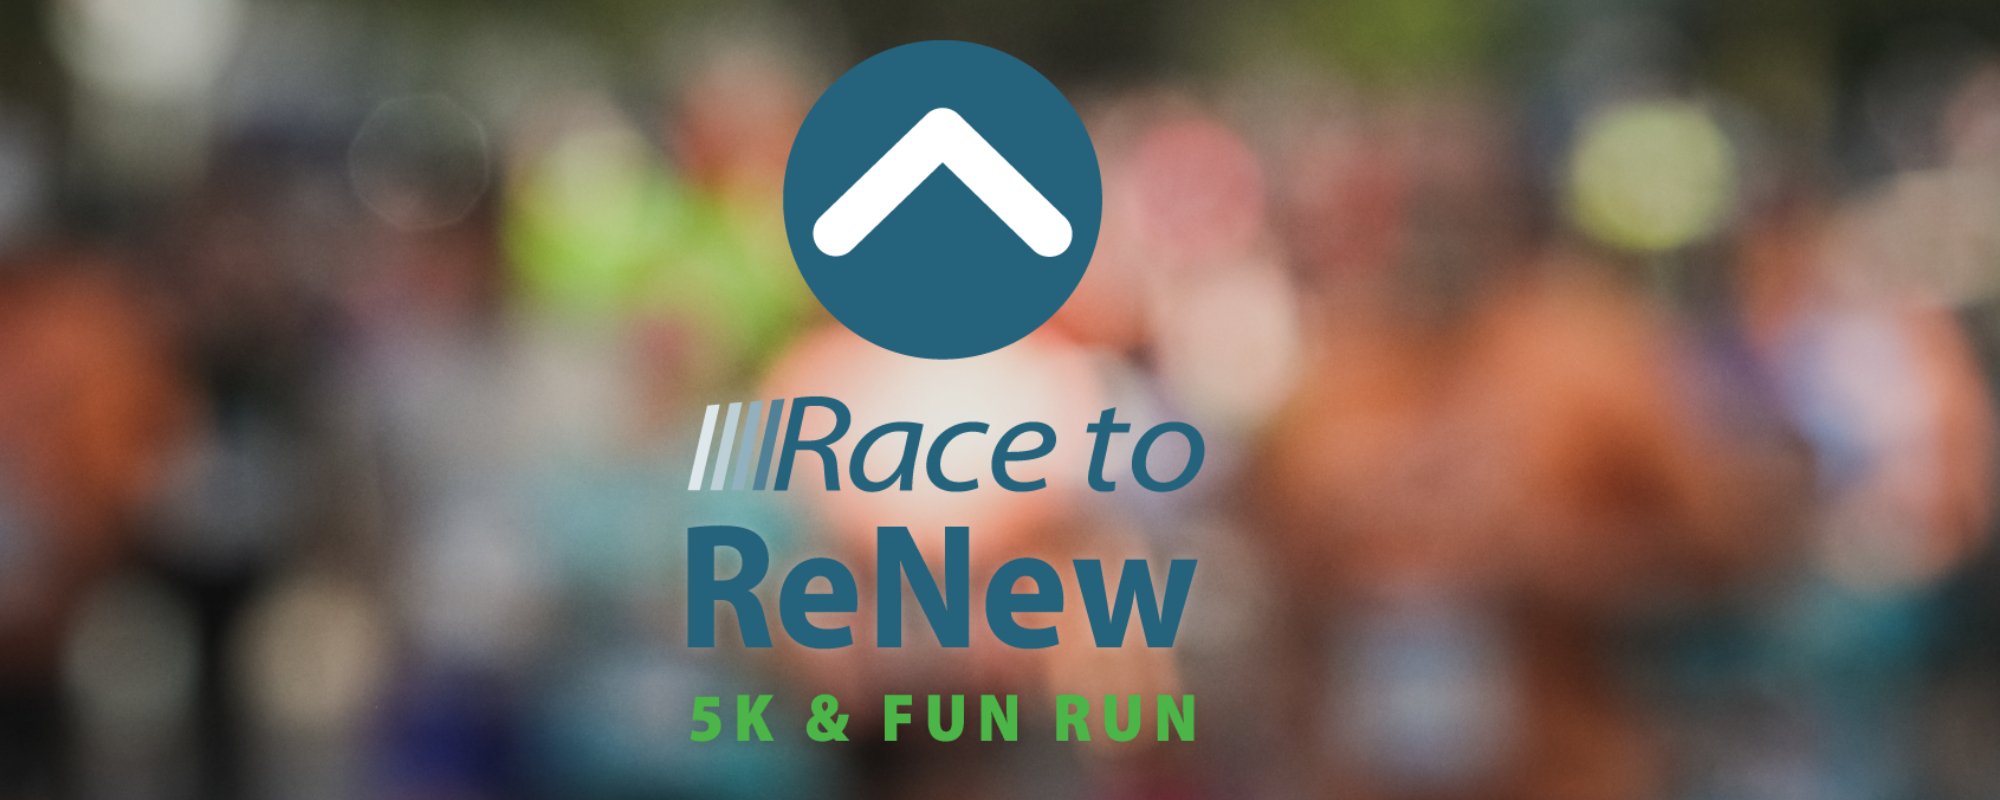 Race To Renew 5K & Fun Run in Lake Forest